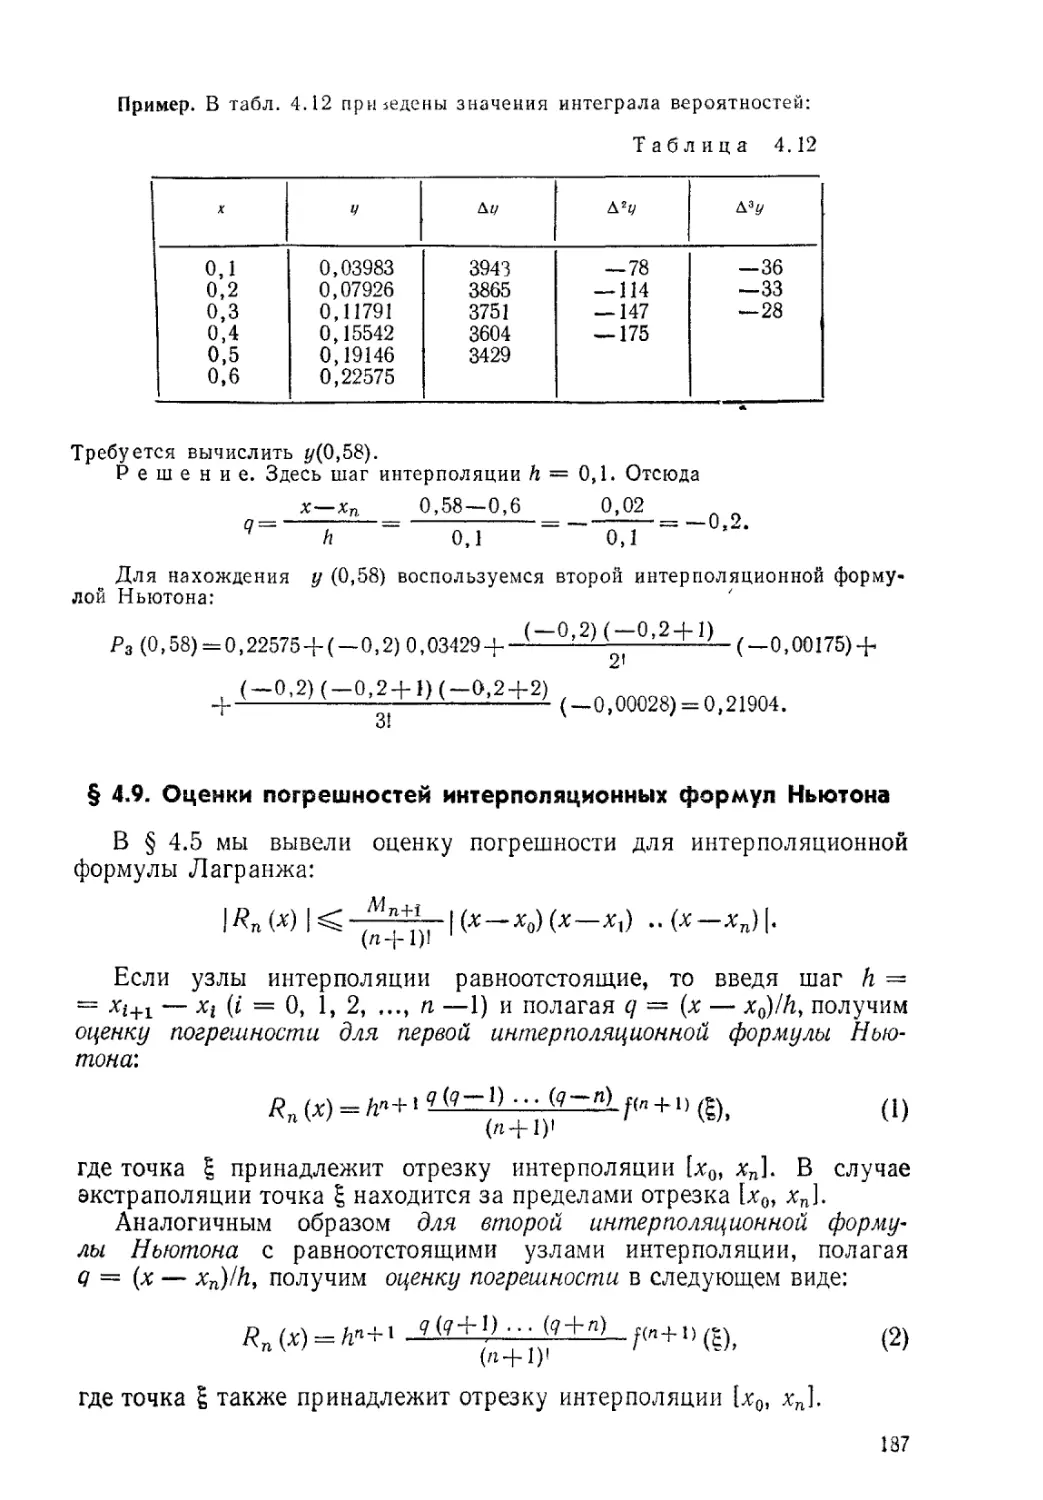 § 4.9. Оценки погрешностей интерполяционных формул Ньютона